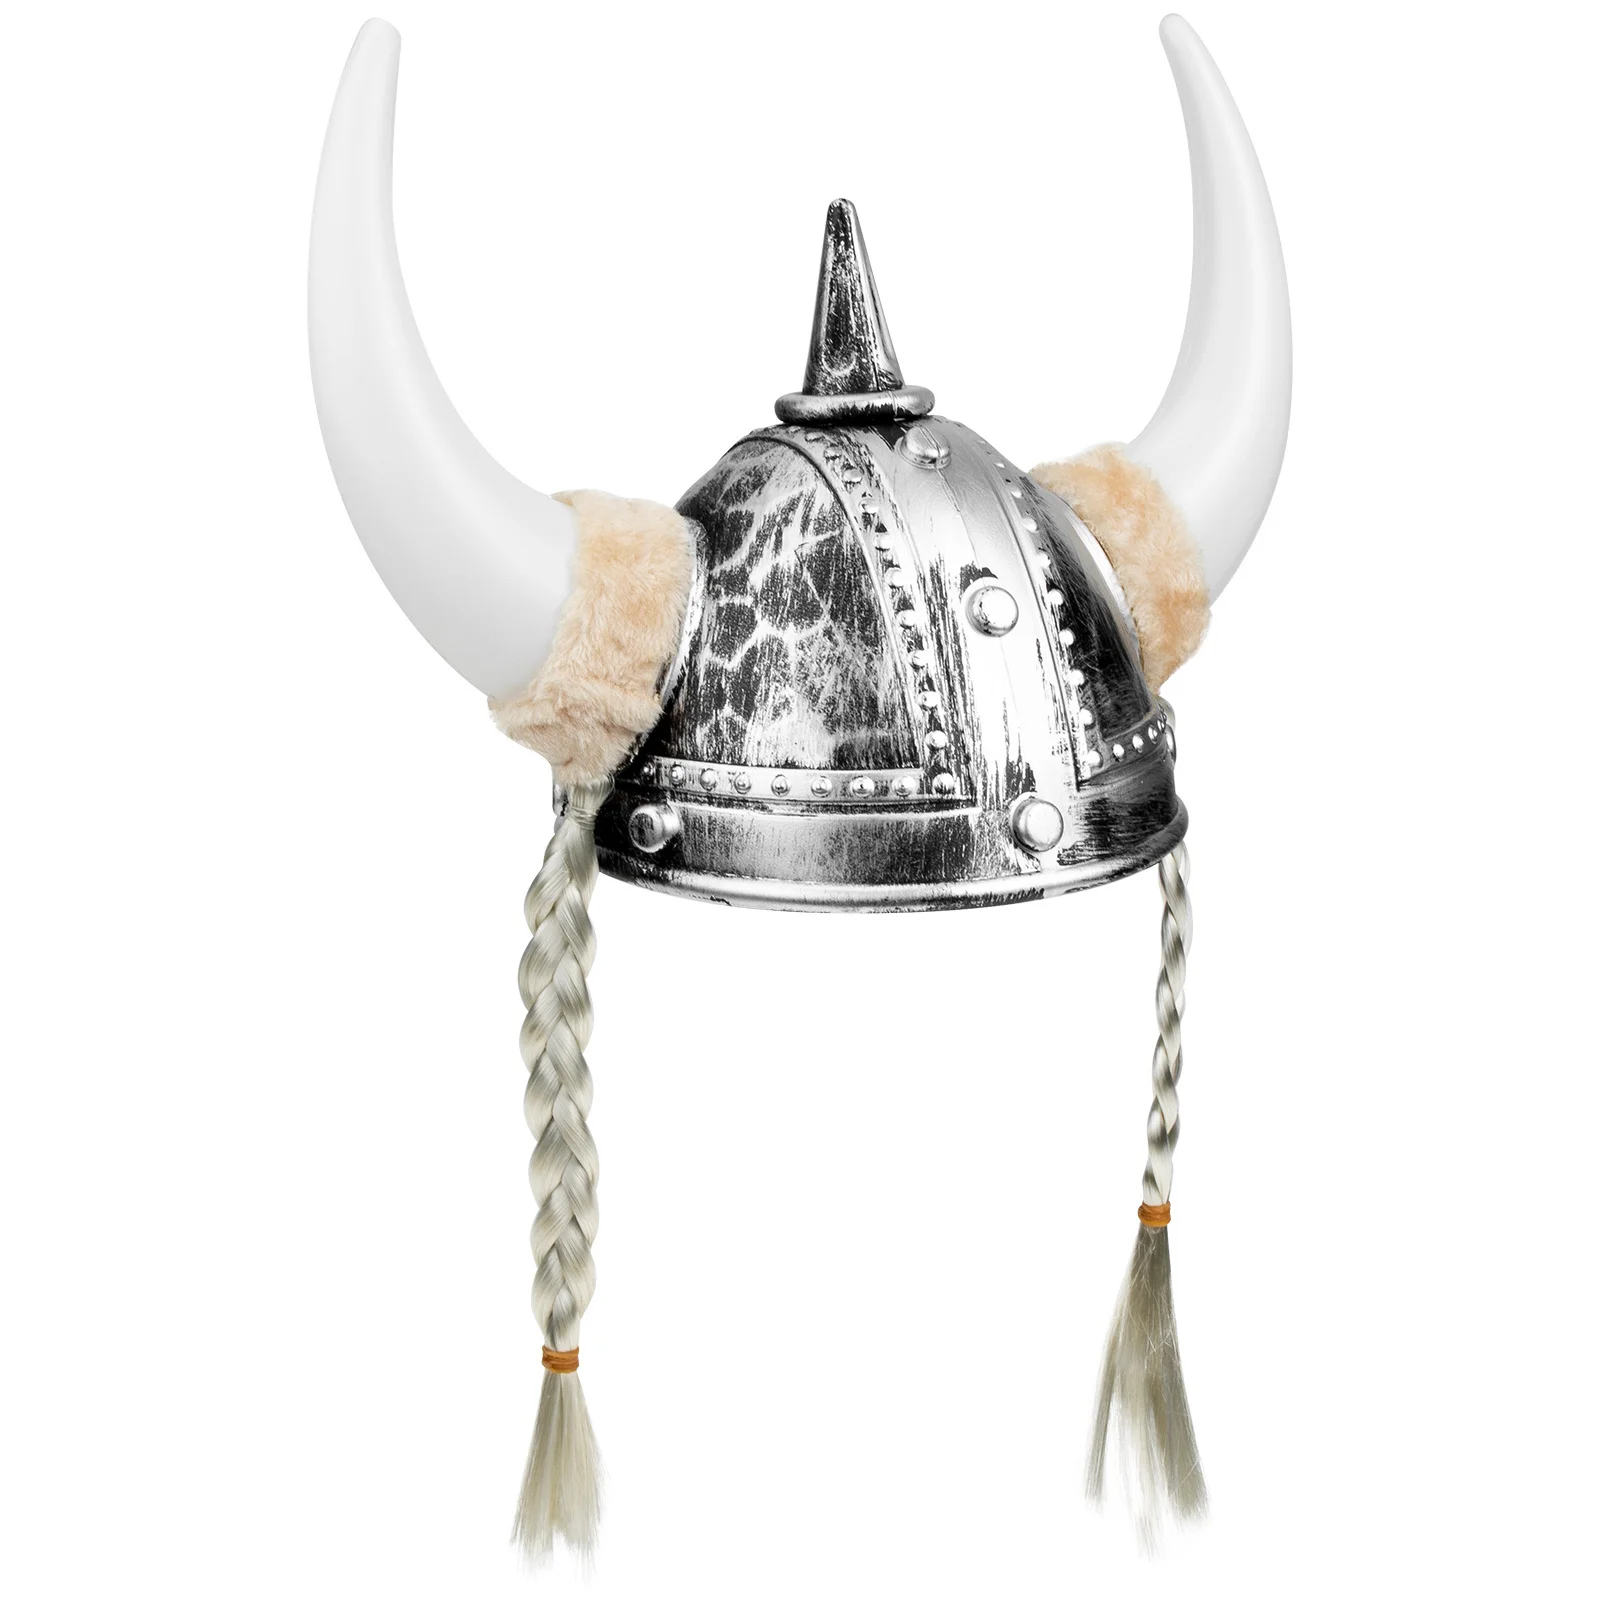 

Шапка викинга Horn костюм воин косплей Хэллоуин Маскарад средневековые рога дети мужчины рыцарские костюмы пластиковый головной убор солдат